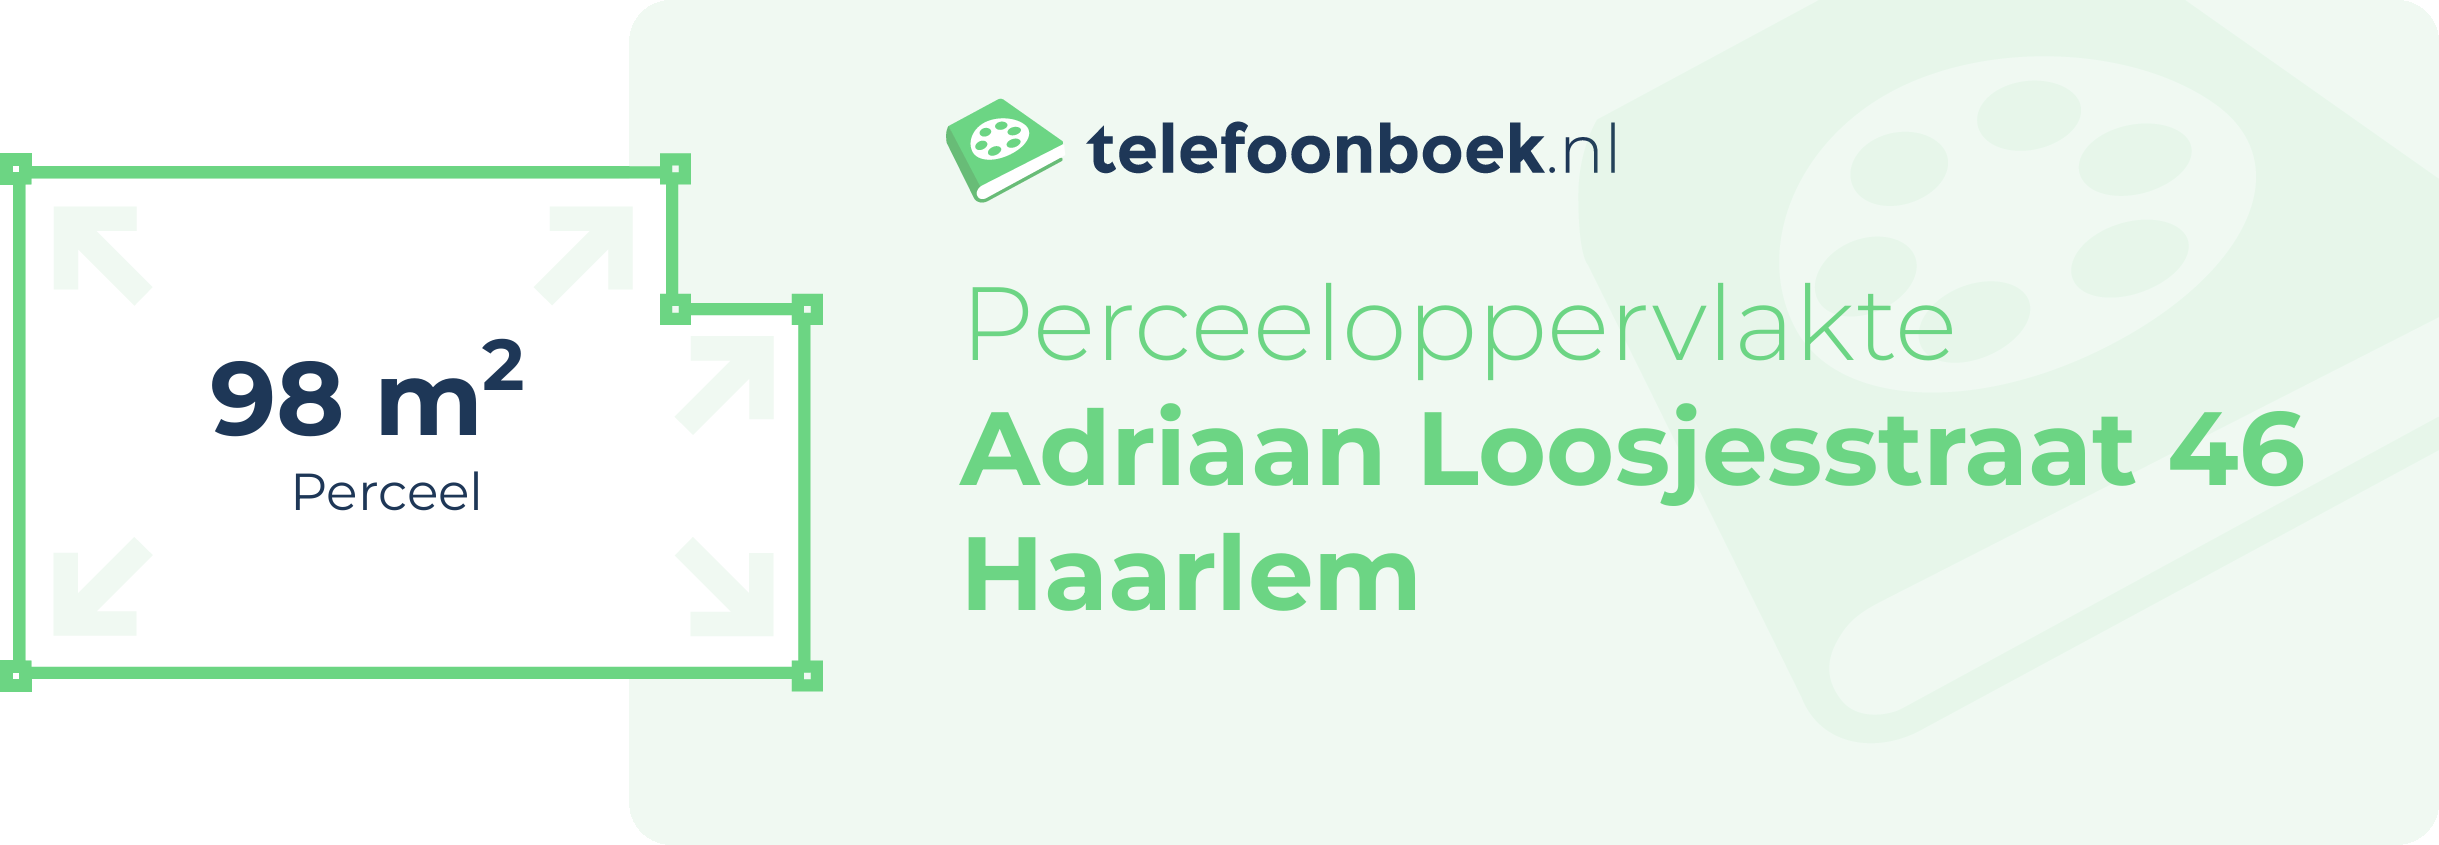 Perceeloppervlakte Adriaan Loosjesstraat 46 Haarlem